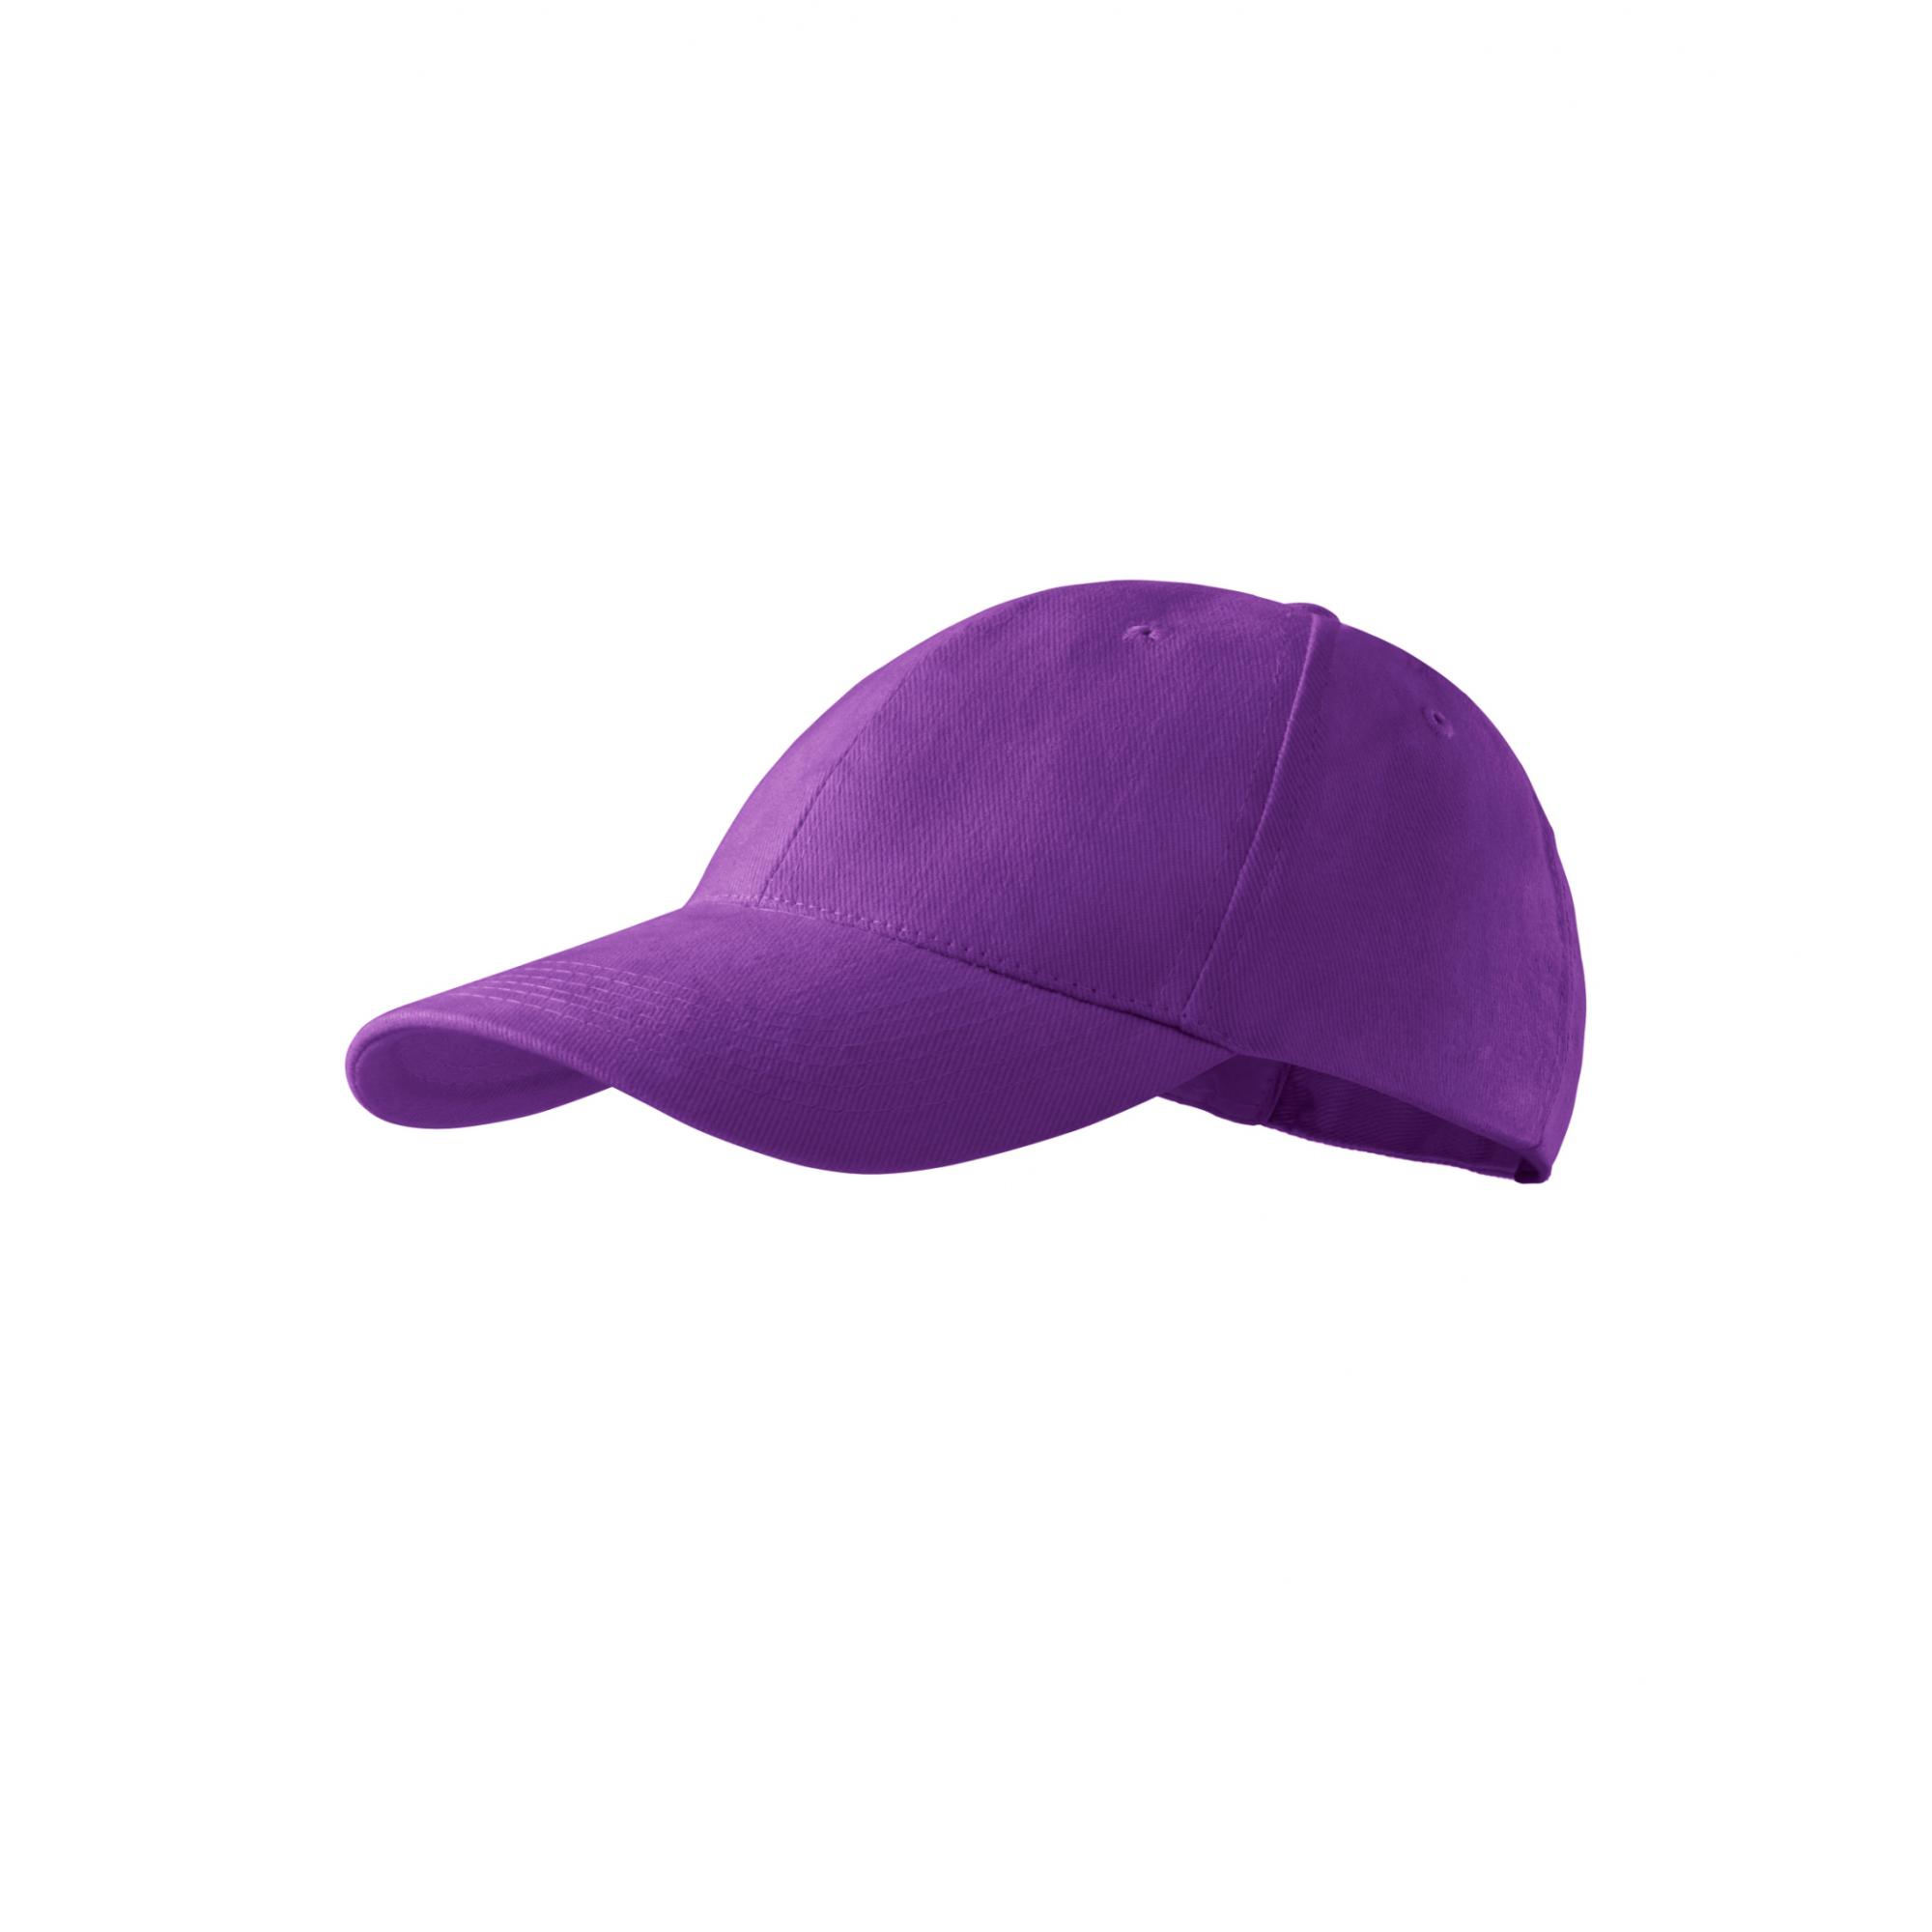 Şapcă pentru copii 6P Kids 303 Violet Marime universala